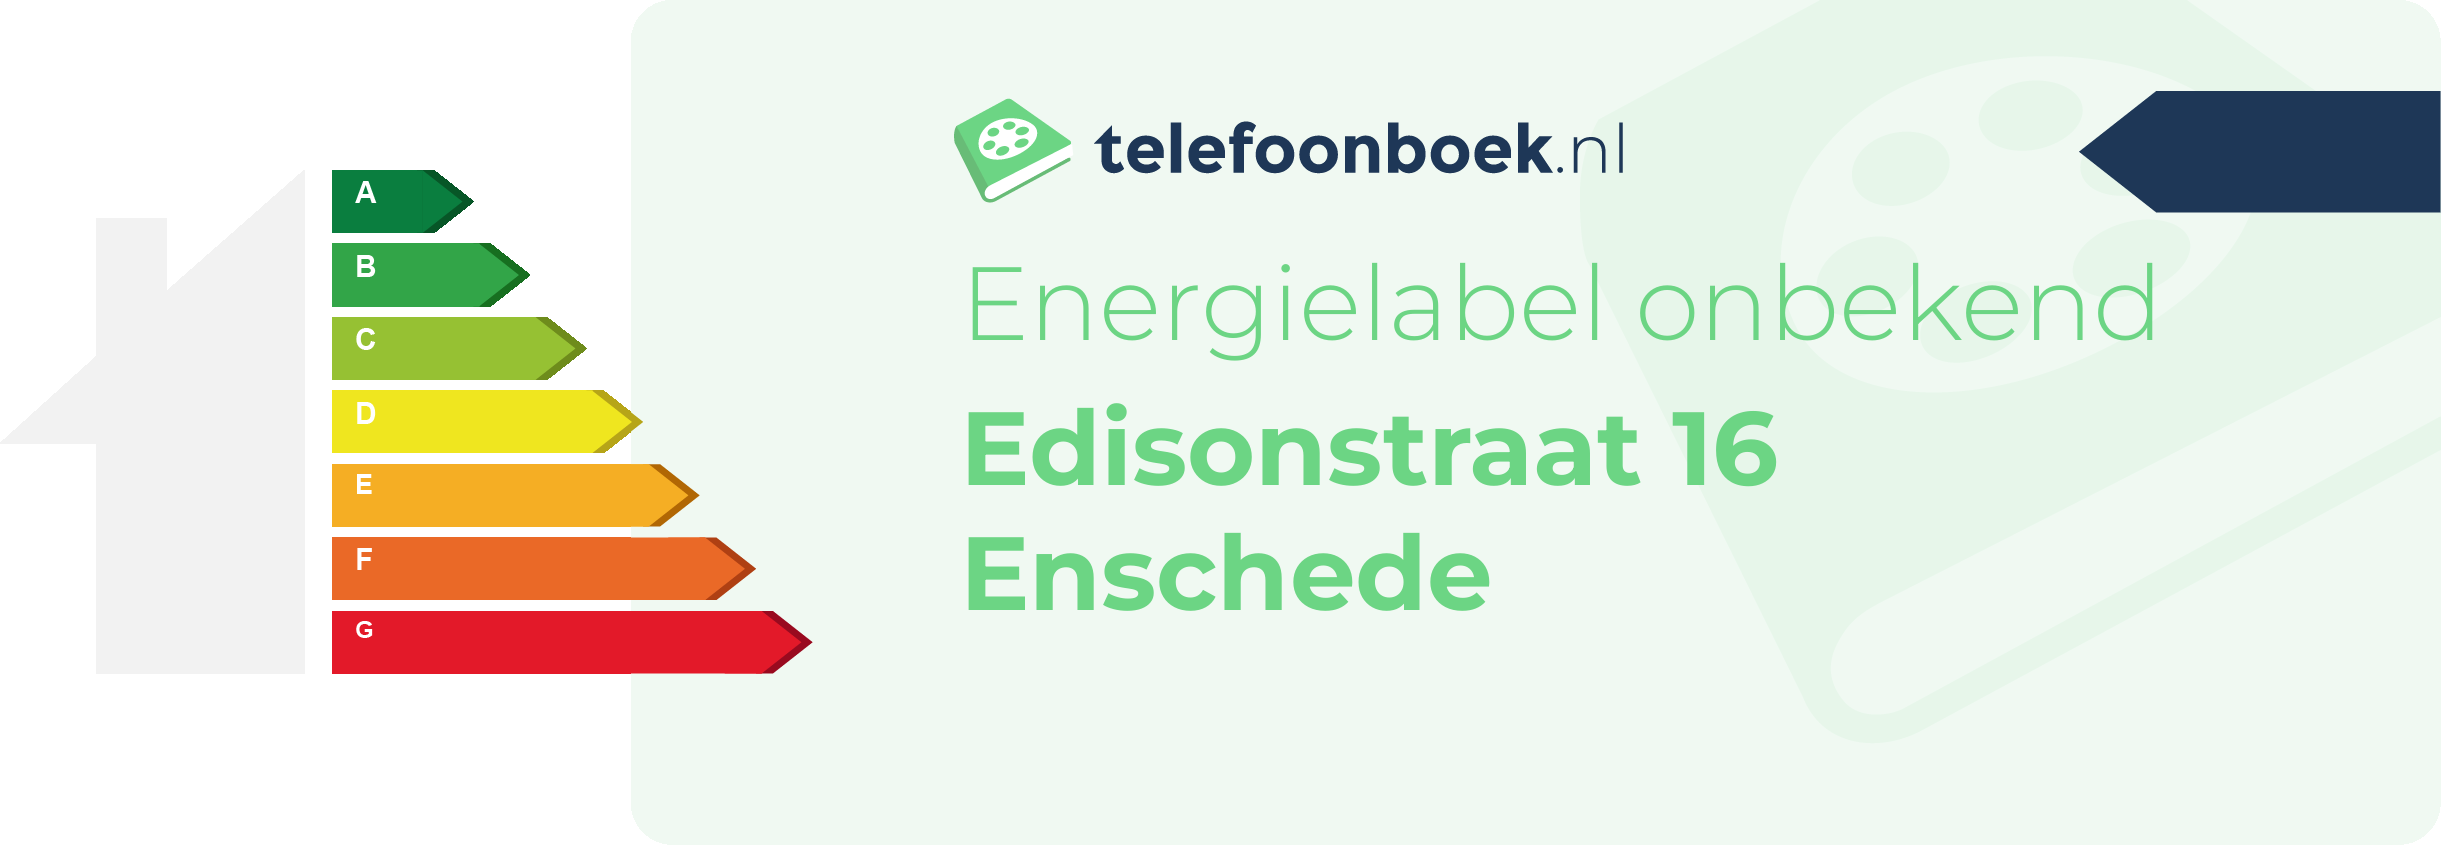 Energielabel Edisonstraat 16 Enschede